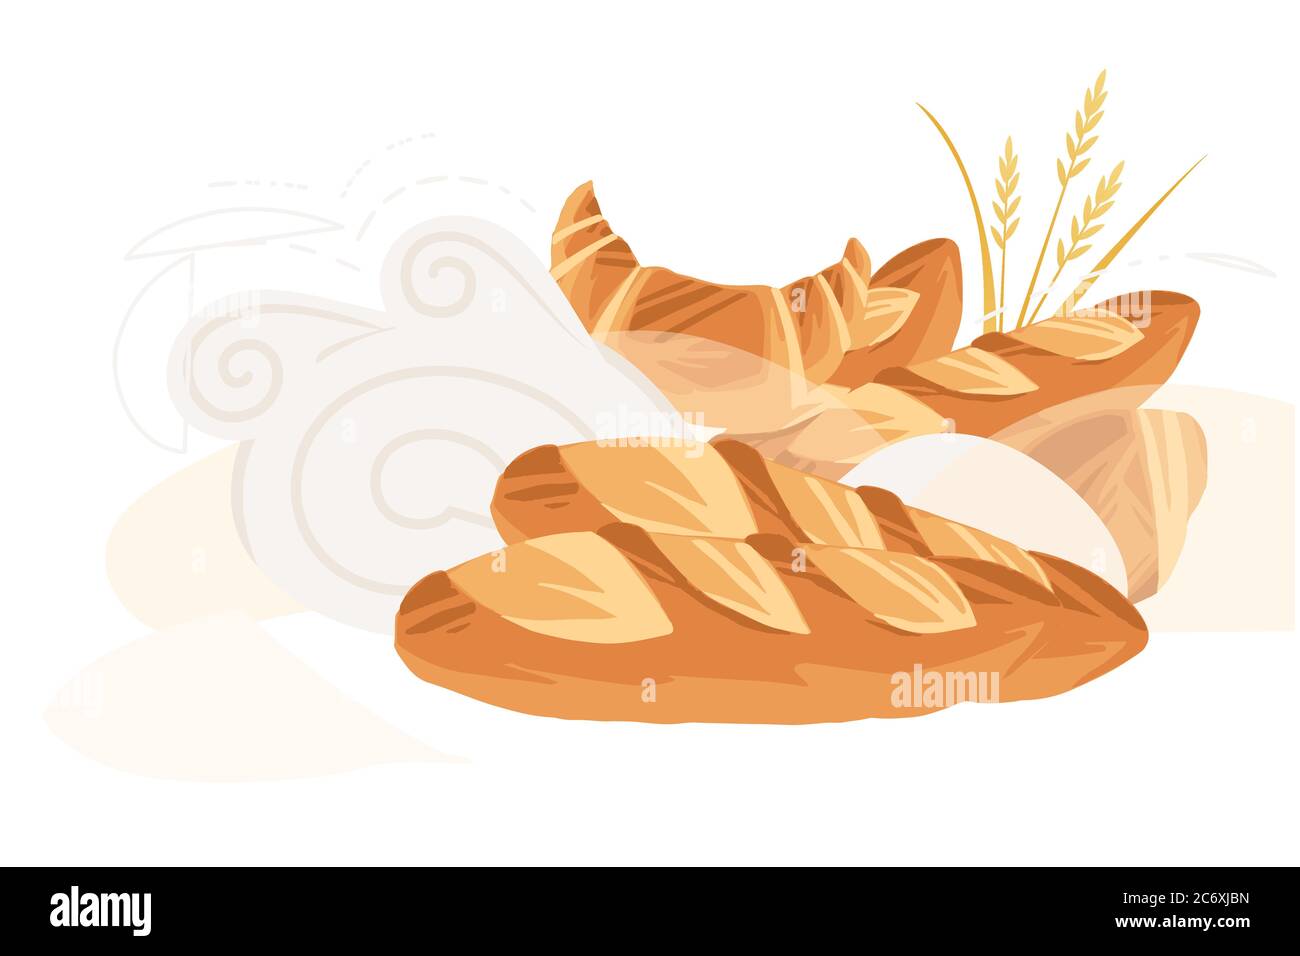 Publicité flyer design avec des produits de boulangerie pour la pâtisserie dessin animé de la boutique de pain de la collection de pain plat vecteur illustration sur fond blanc Illustration de Vecteur